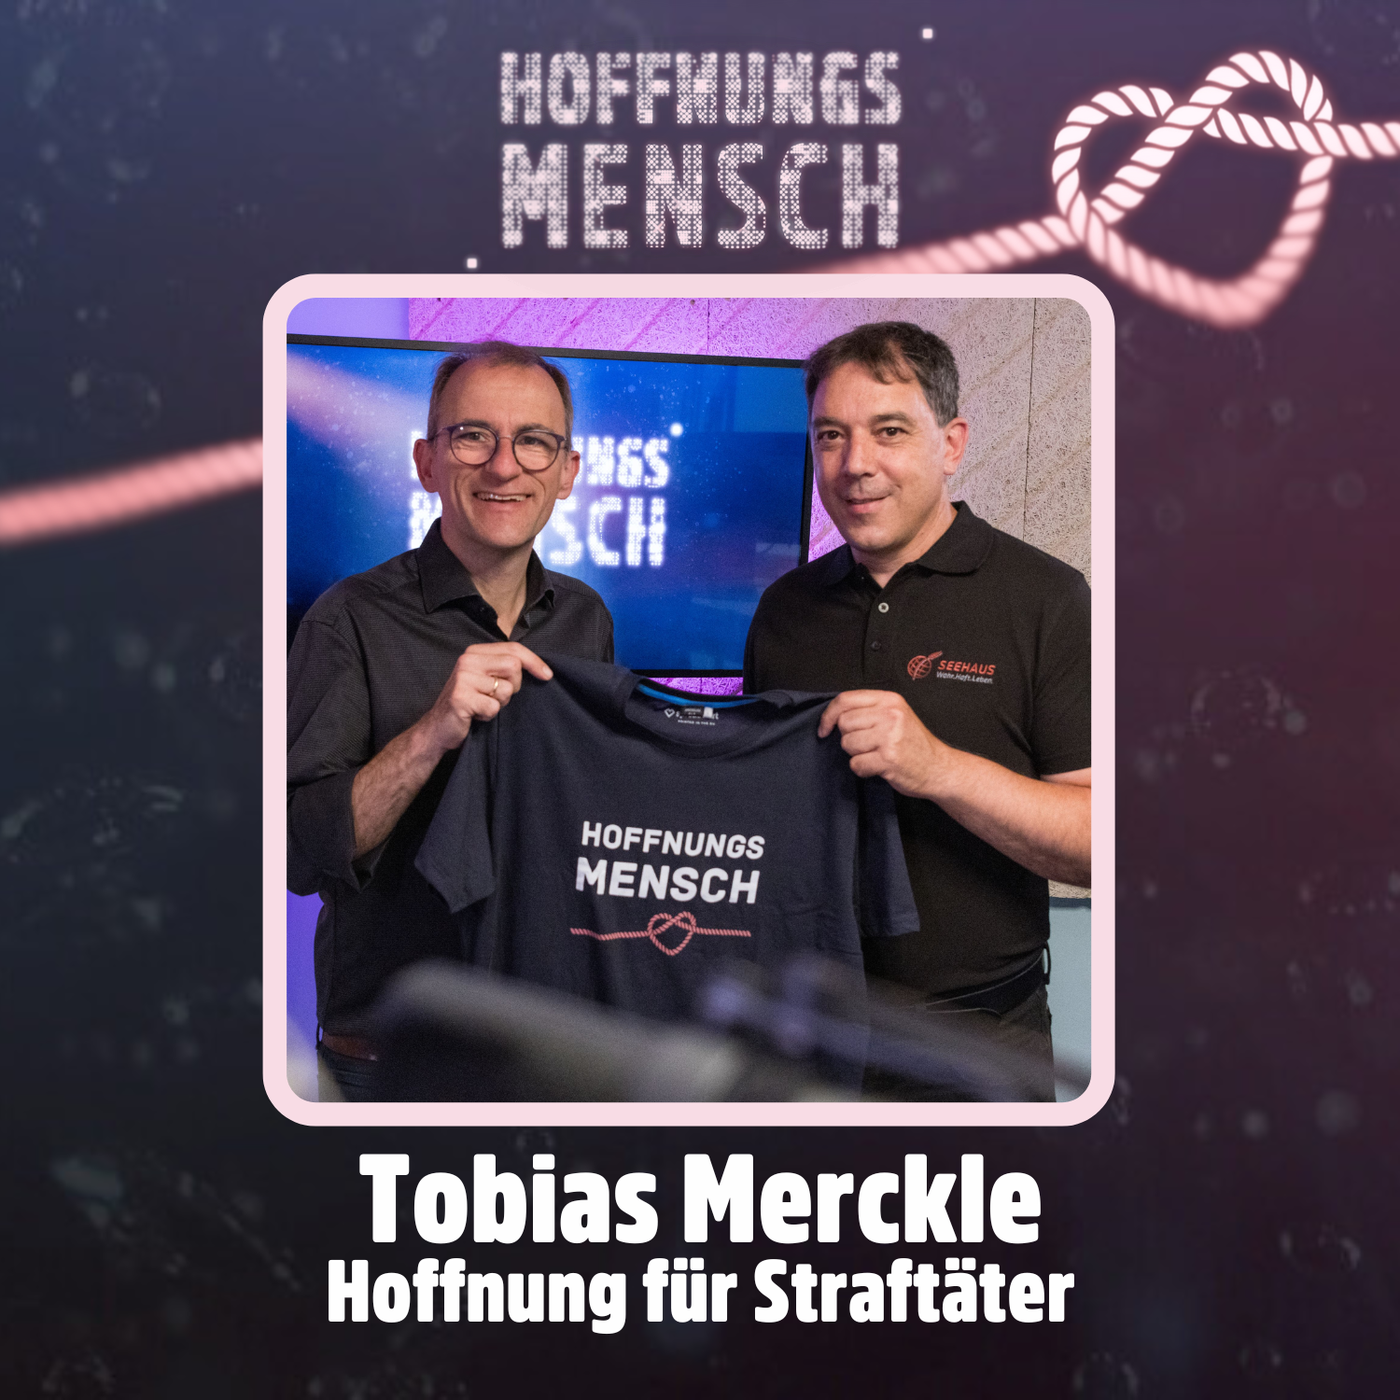 Tobias Merckle: Hoffnung für Straftäter